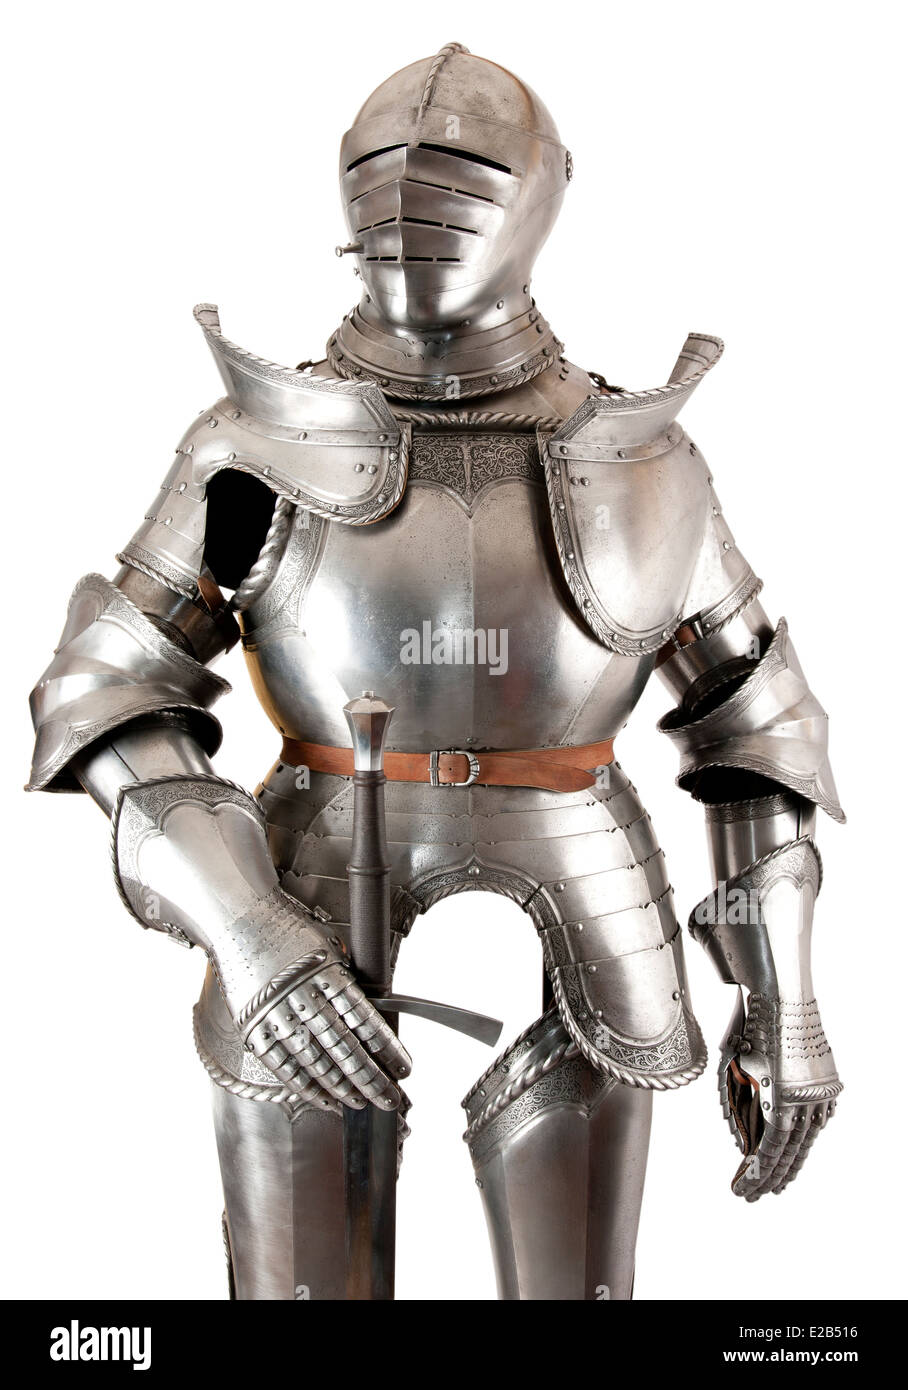 La corazza del cavaliere medievale. La protezione metallica del soldato contro l'arma dell'avversario Foto Stock